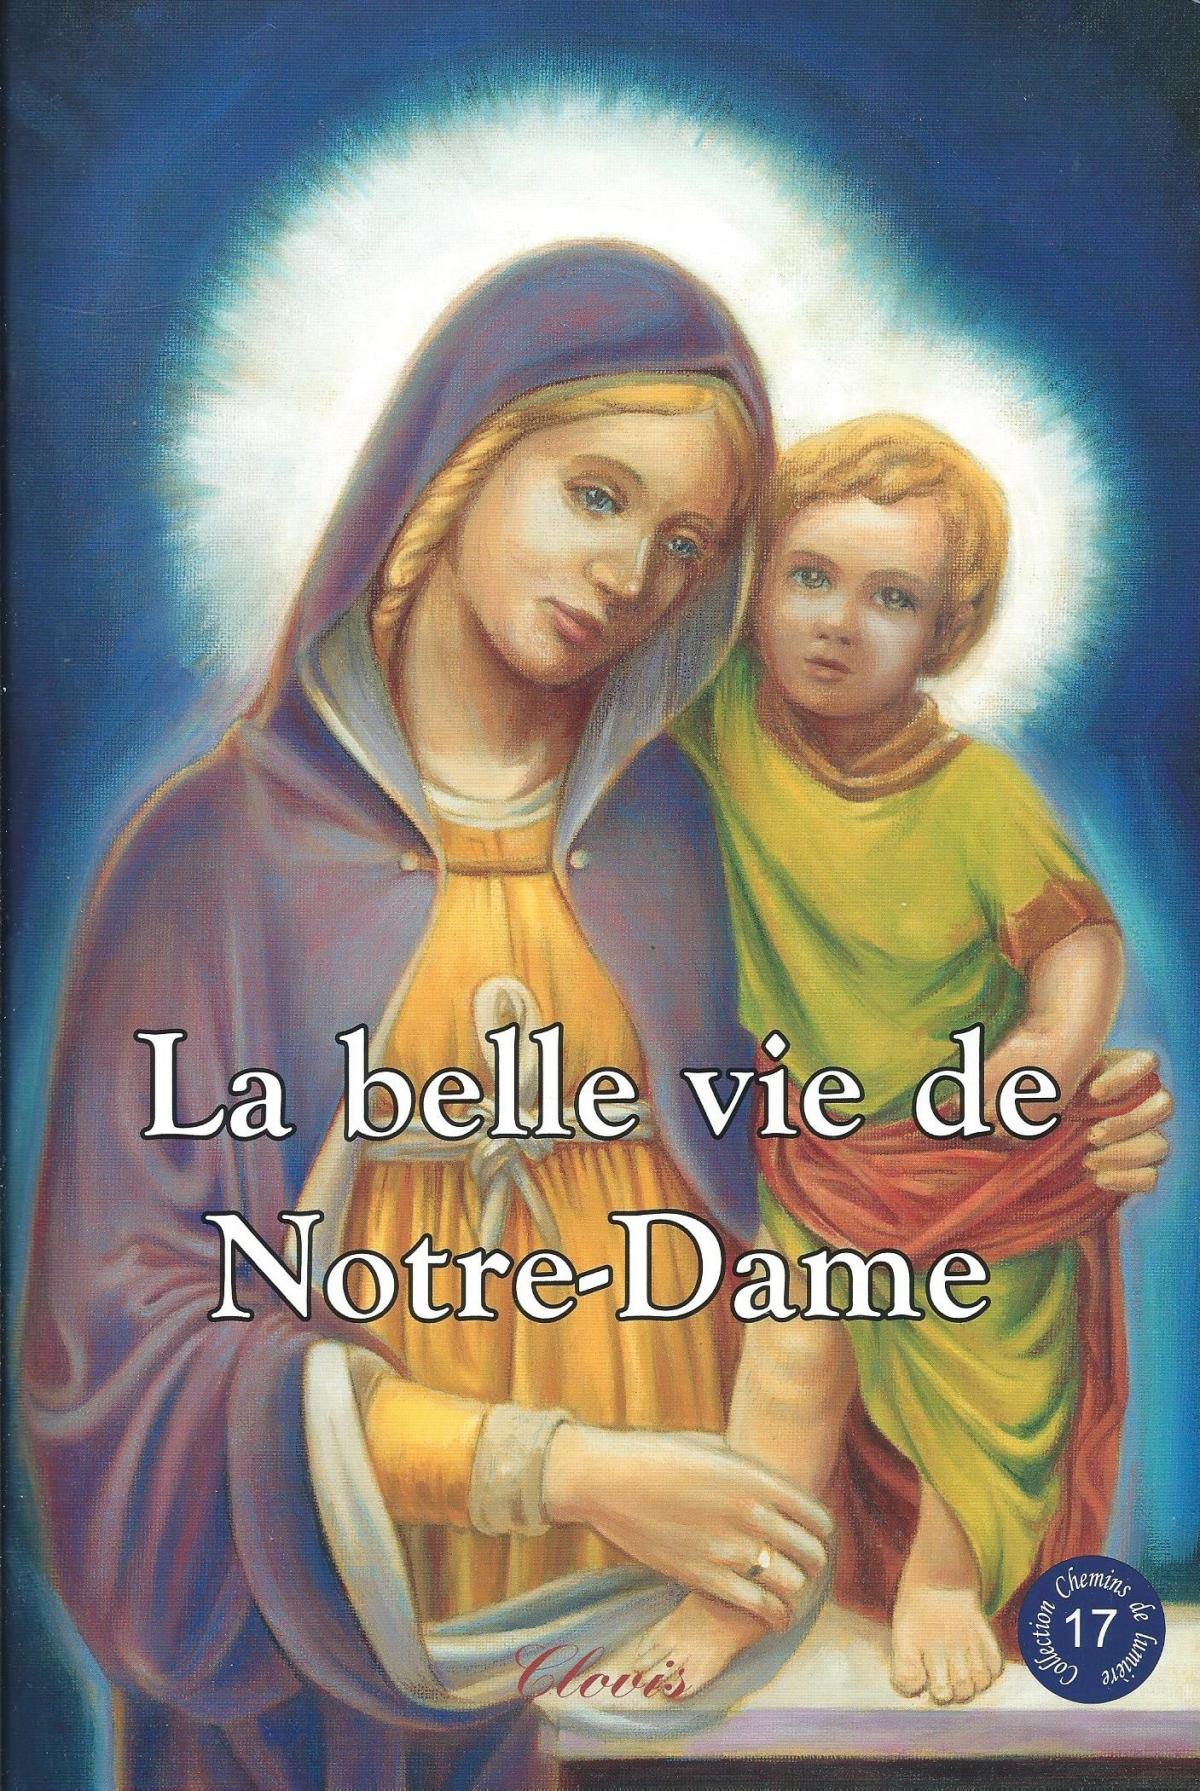 La belle vie de Notre-Dame